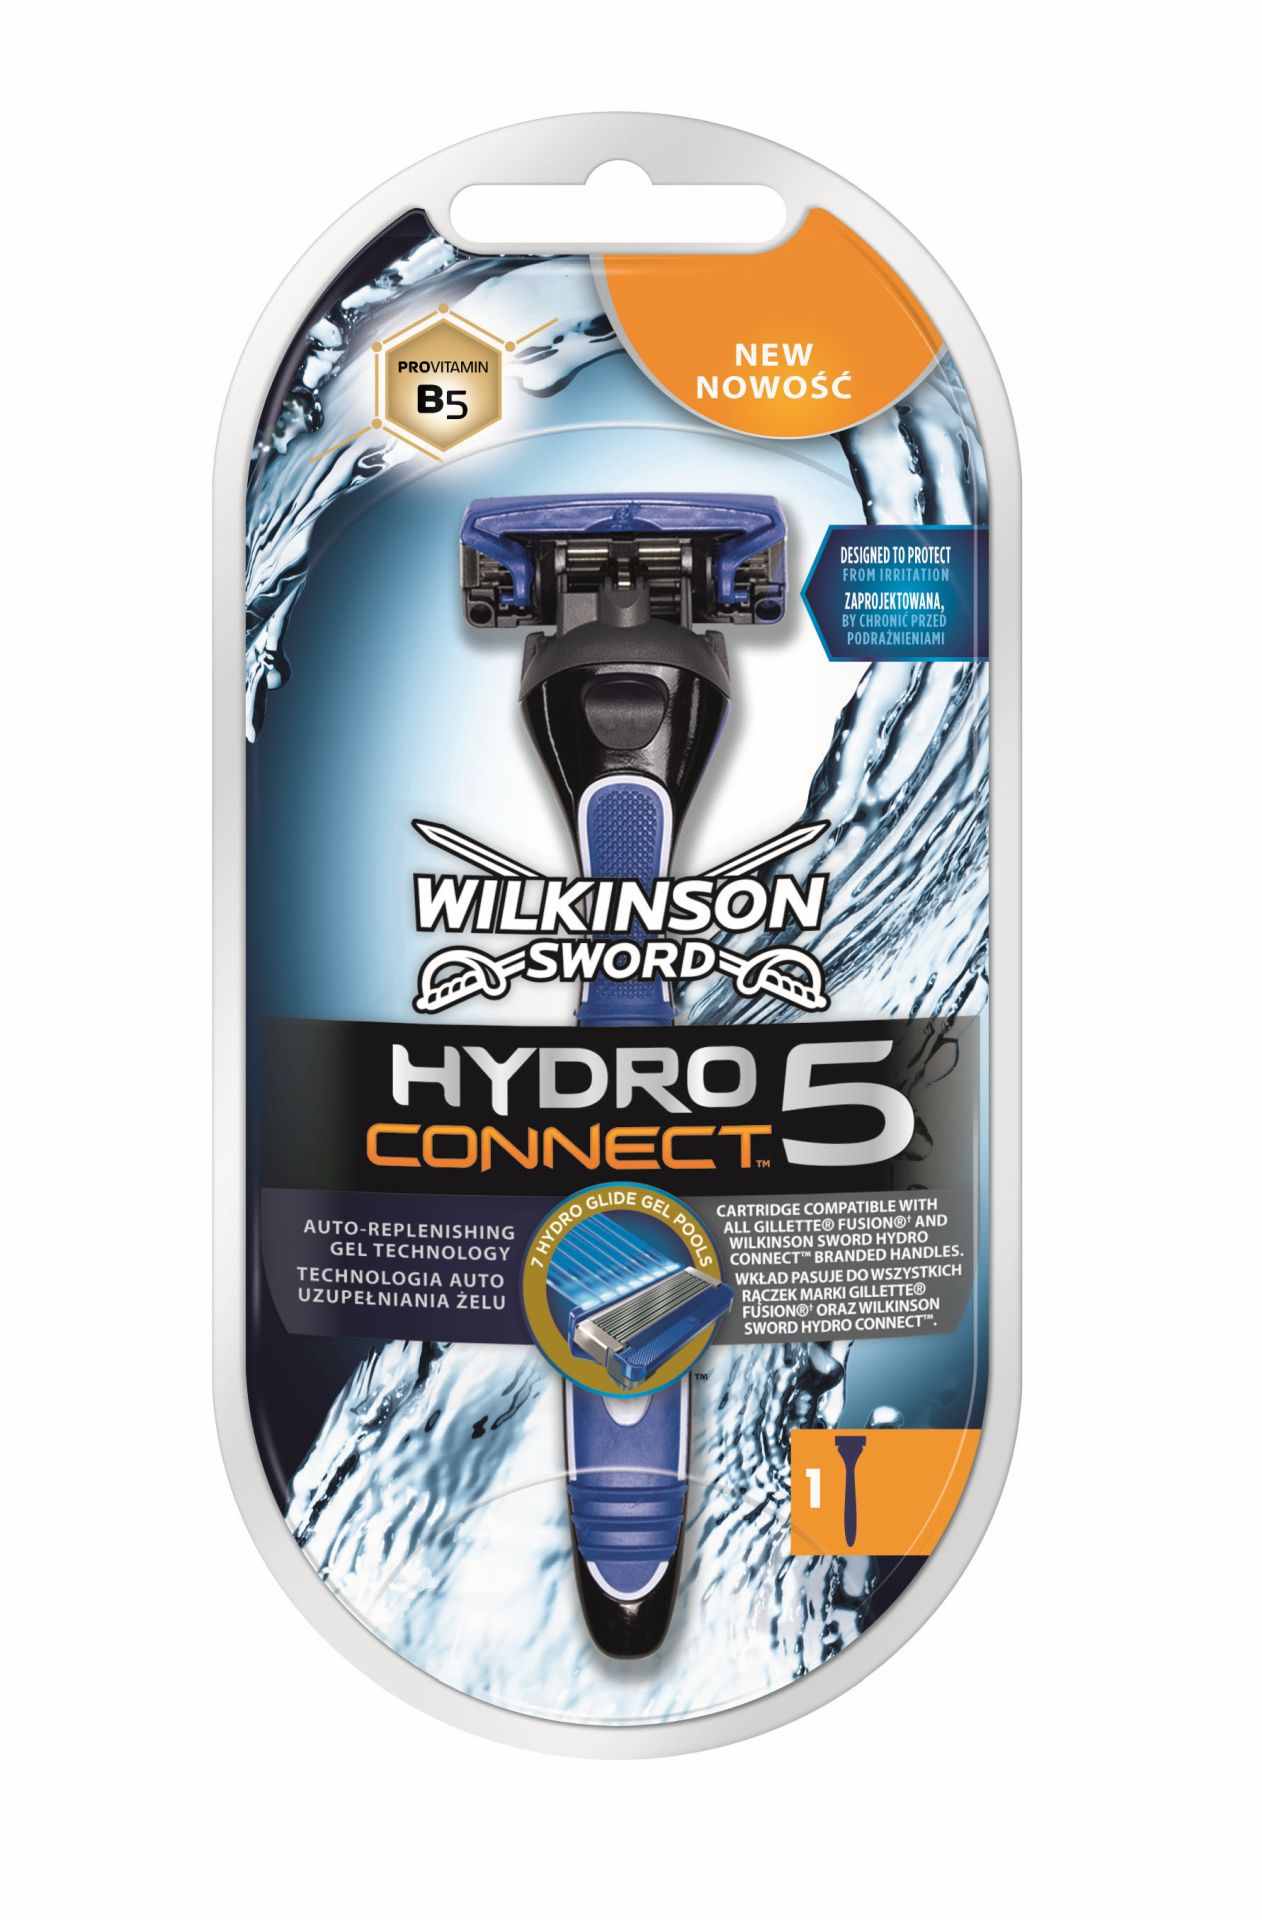 Wilkinson Sword Hydro Connect 5 - mała rewolucja w goleniu